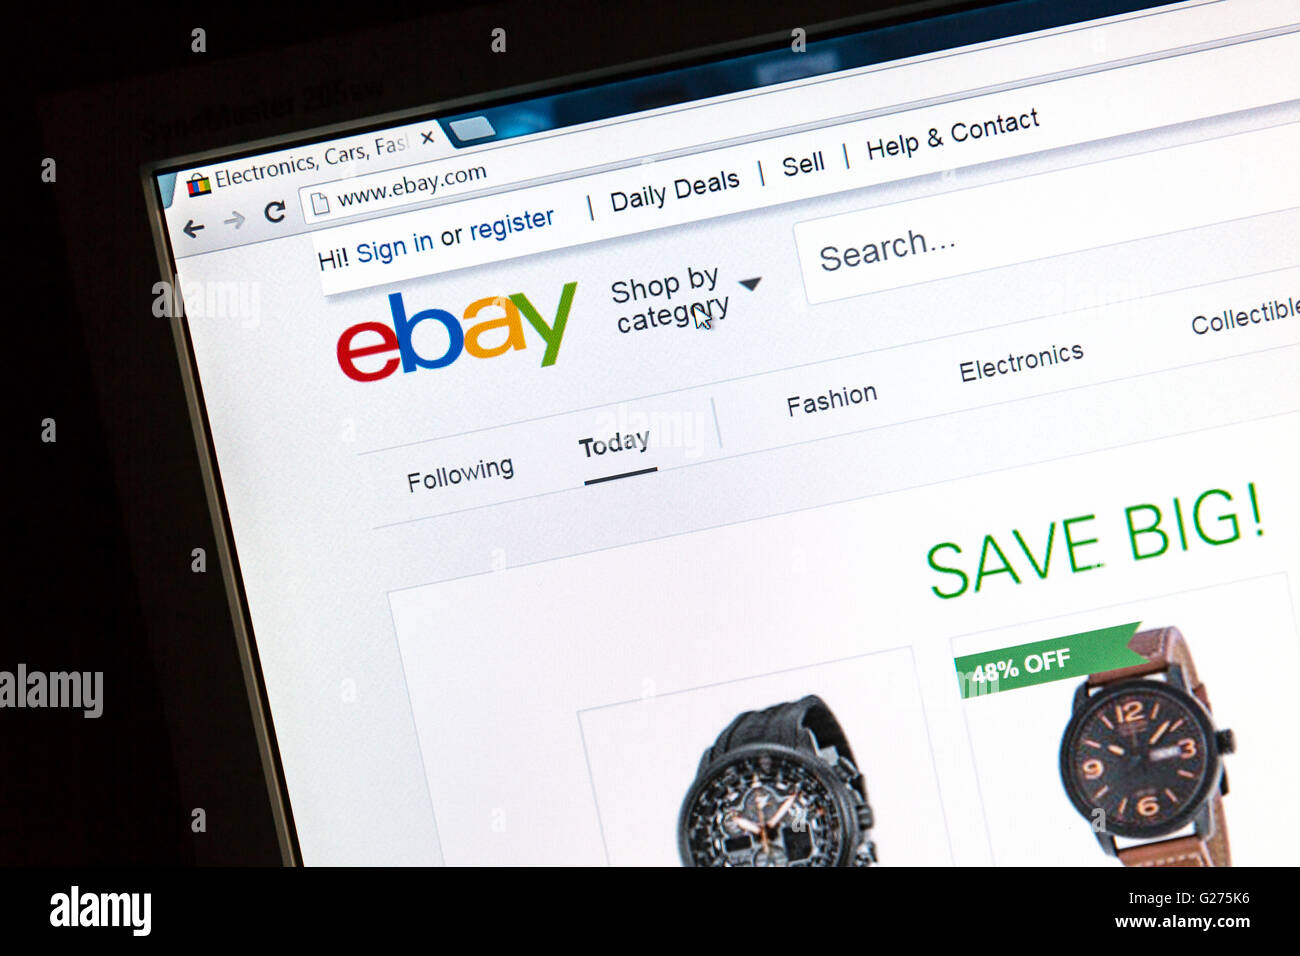 Ebay site web sur un écran d'ordinateur eBay est une société multinationale américaine et l'entreprise de commerce électronique Banque D'Images